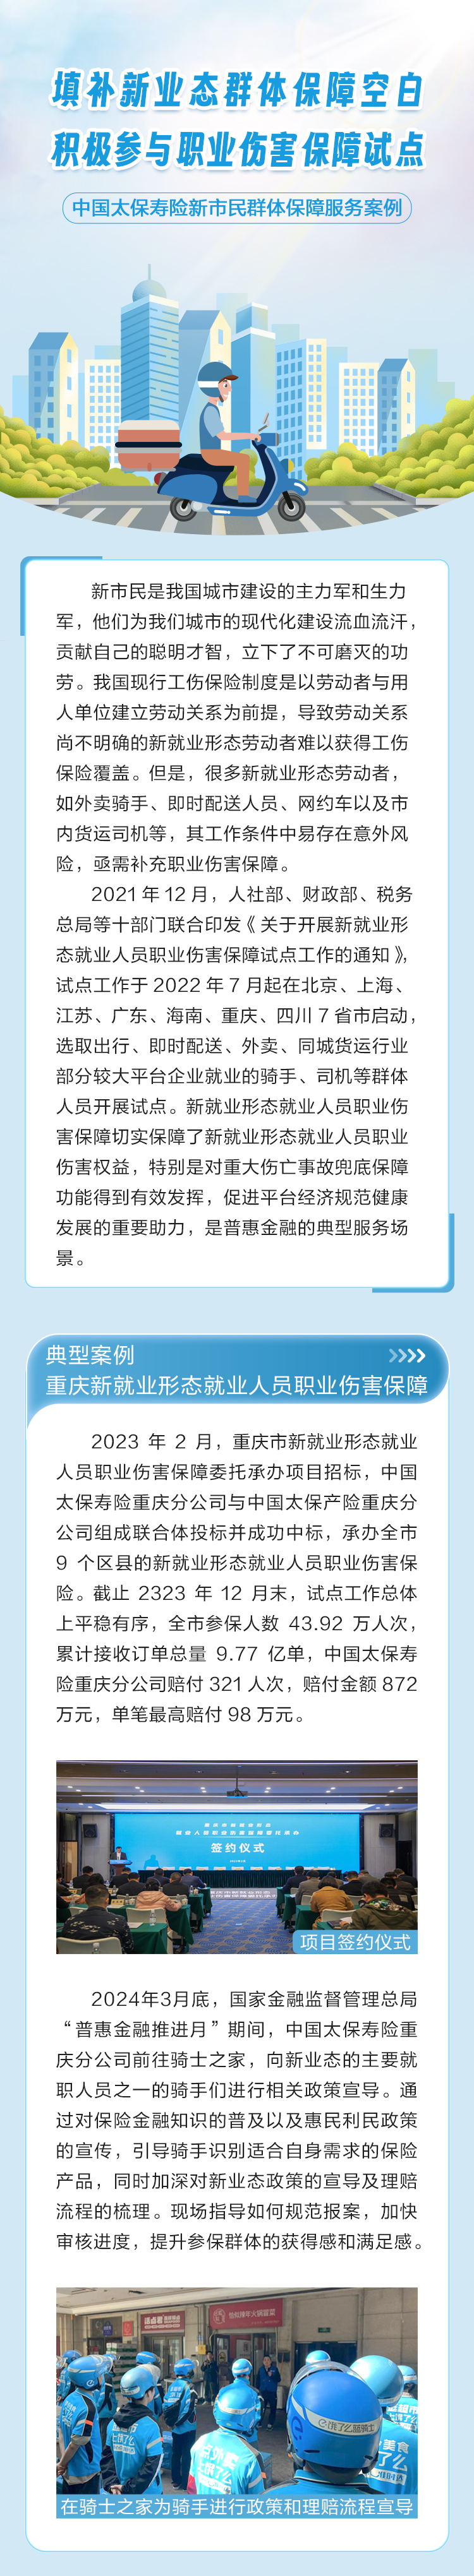 《新业态》普惠金融推进月-重庆市新就业形态职业伤害保障